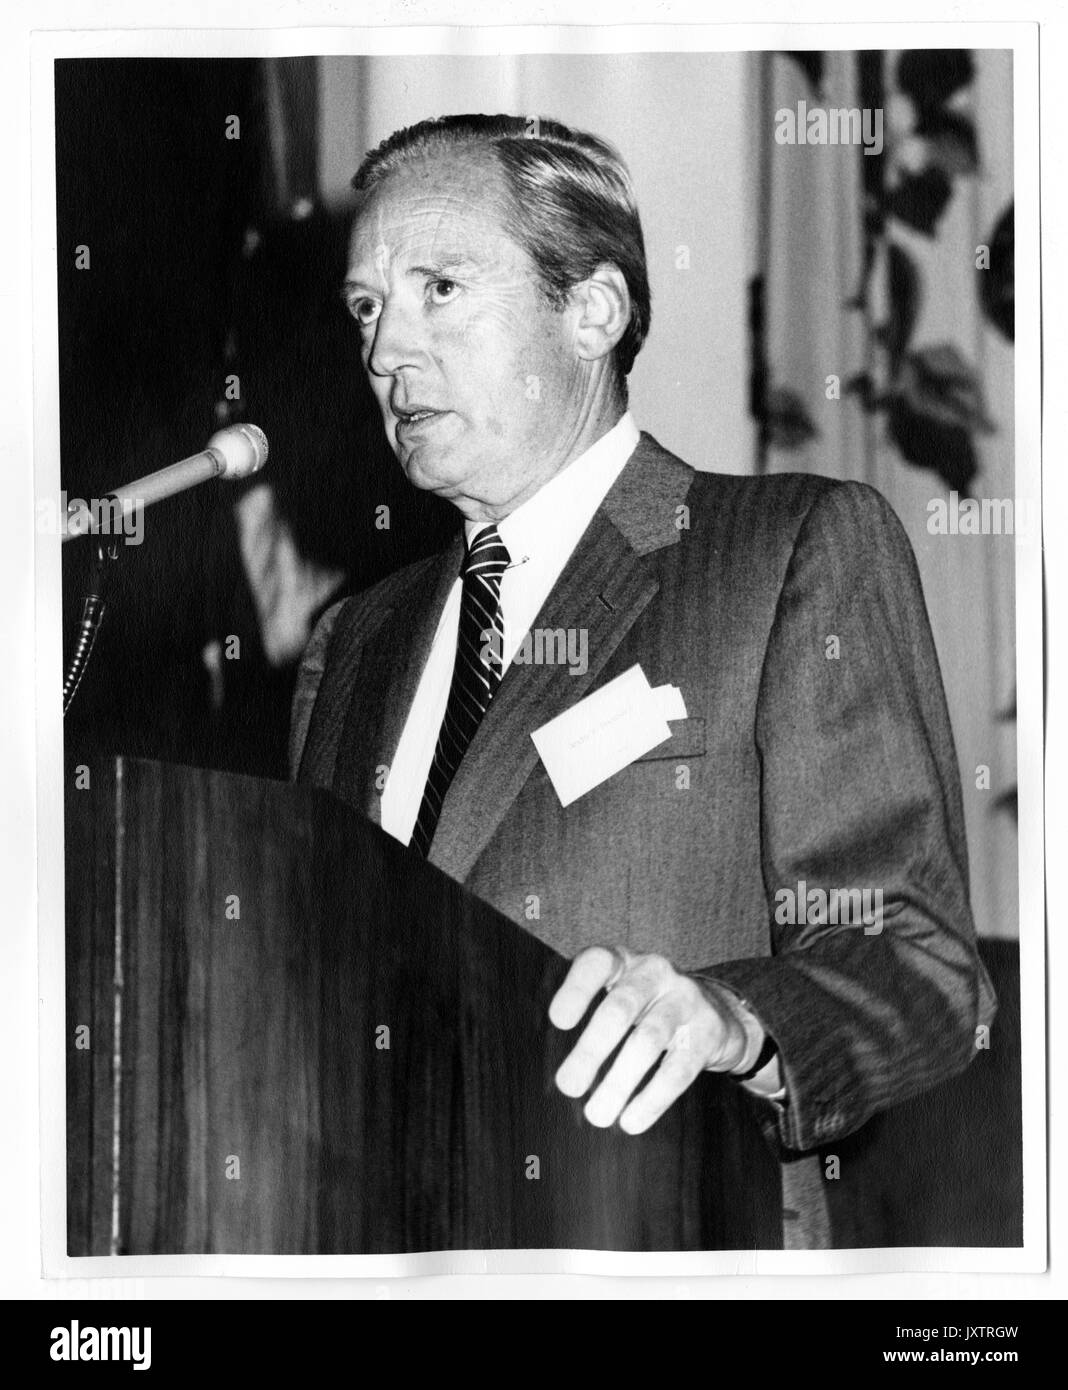 Andre Brewster, campagne pour l'Université John Hopkins, Candide Brewster la prestation de discours à la Greenbrier, campagne pour l'événement de l'Université Johns Hopkins, 1983. Banque D'Images